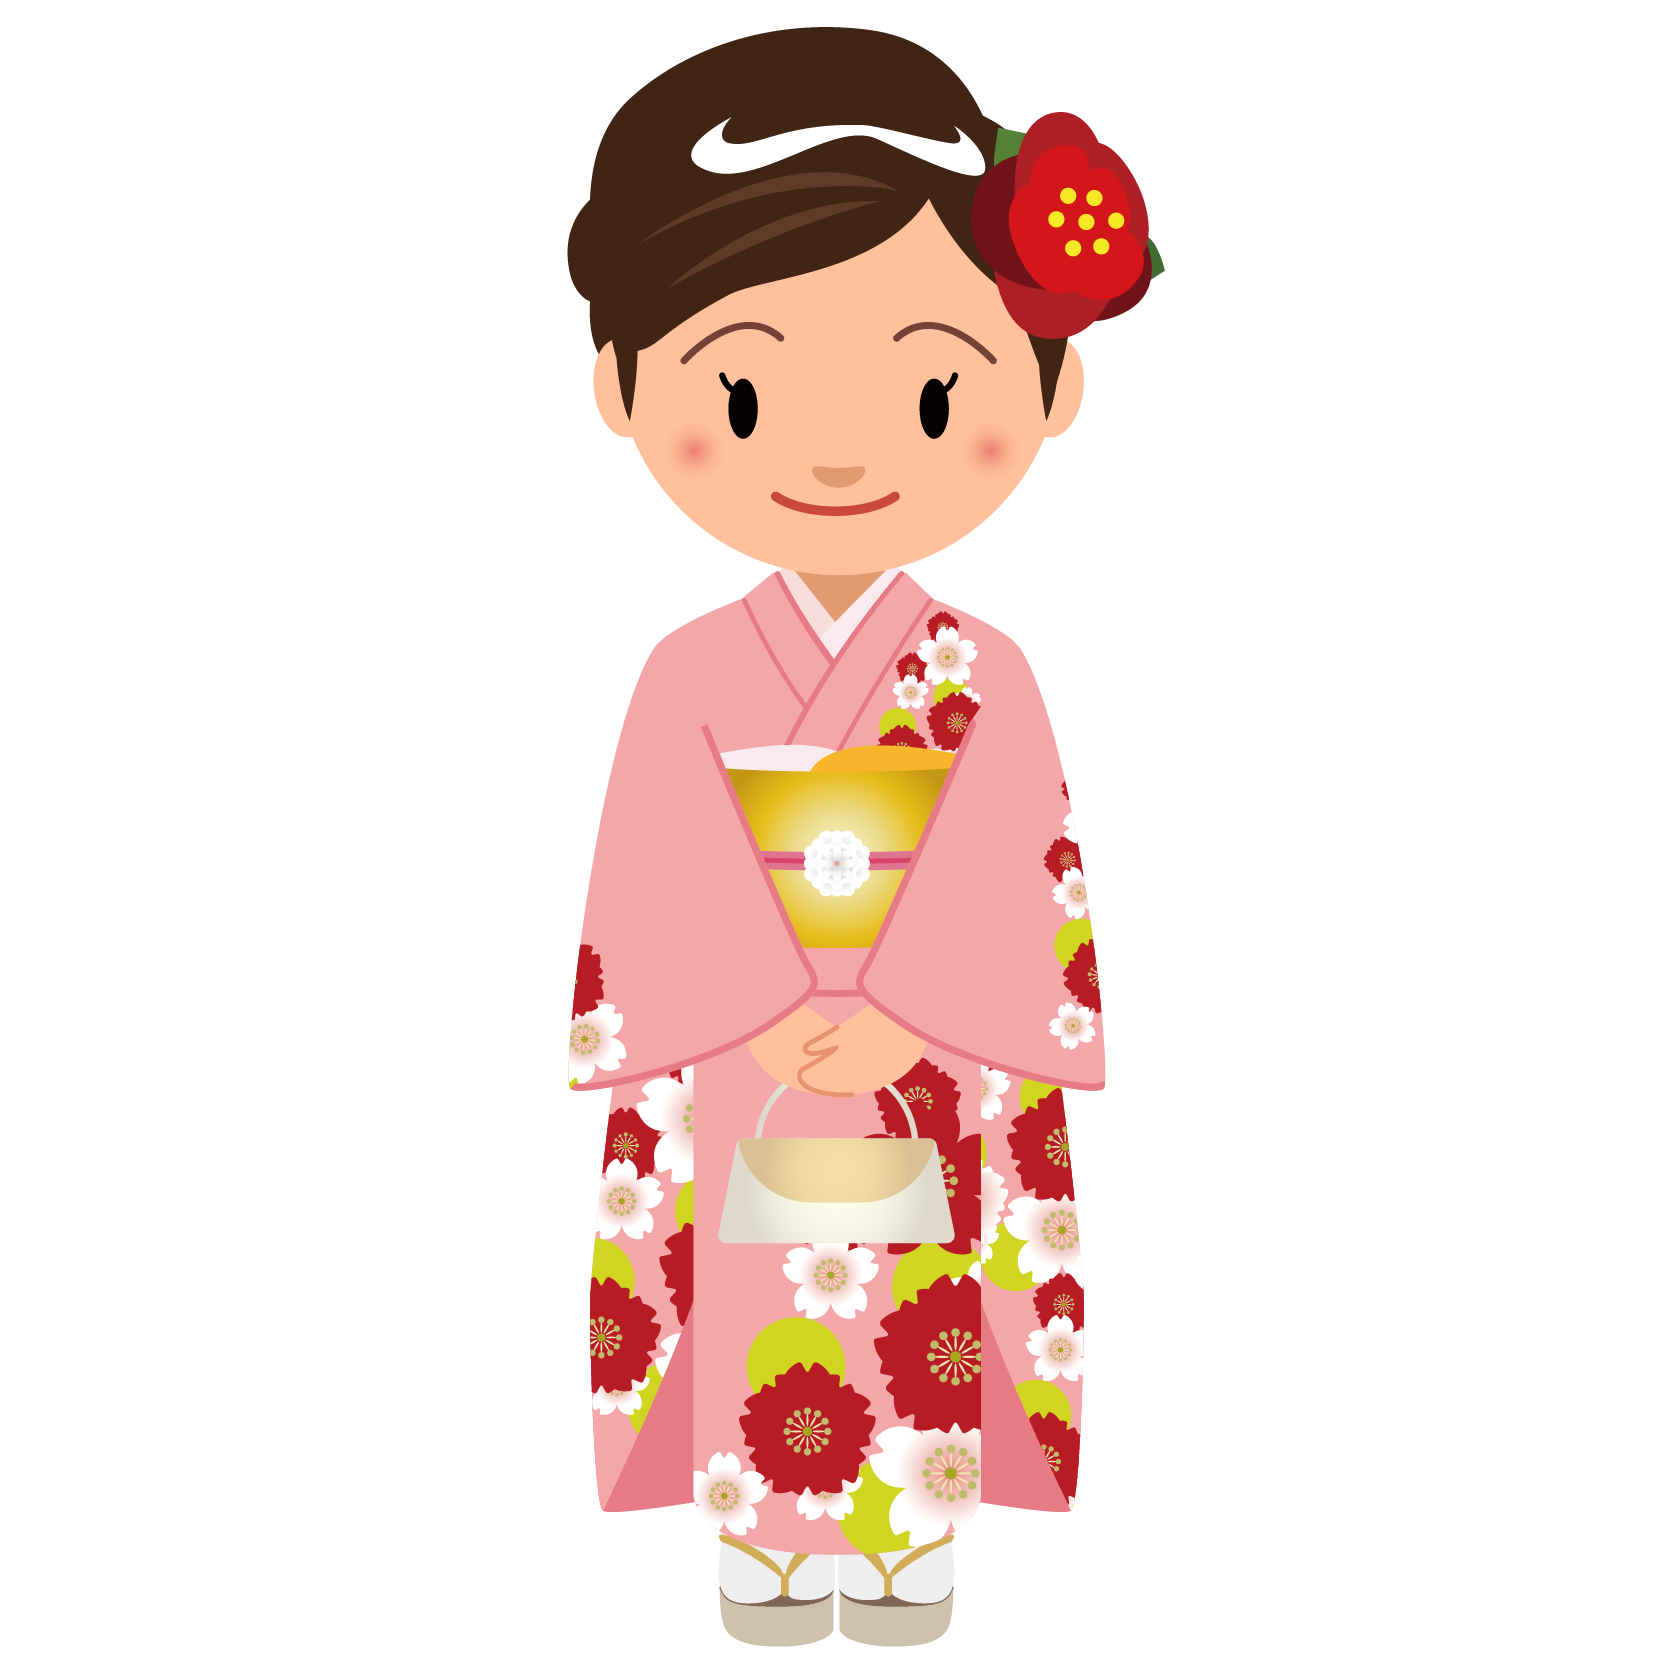 商用フリー 無料イラスト ピンクの着物を着た女性 Kimono003 商用ok フリー素材集 ナイスなイラスト